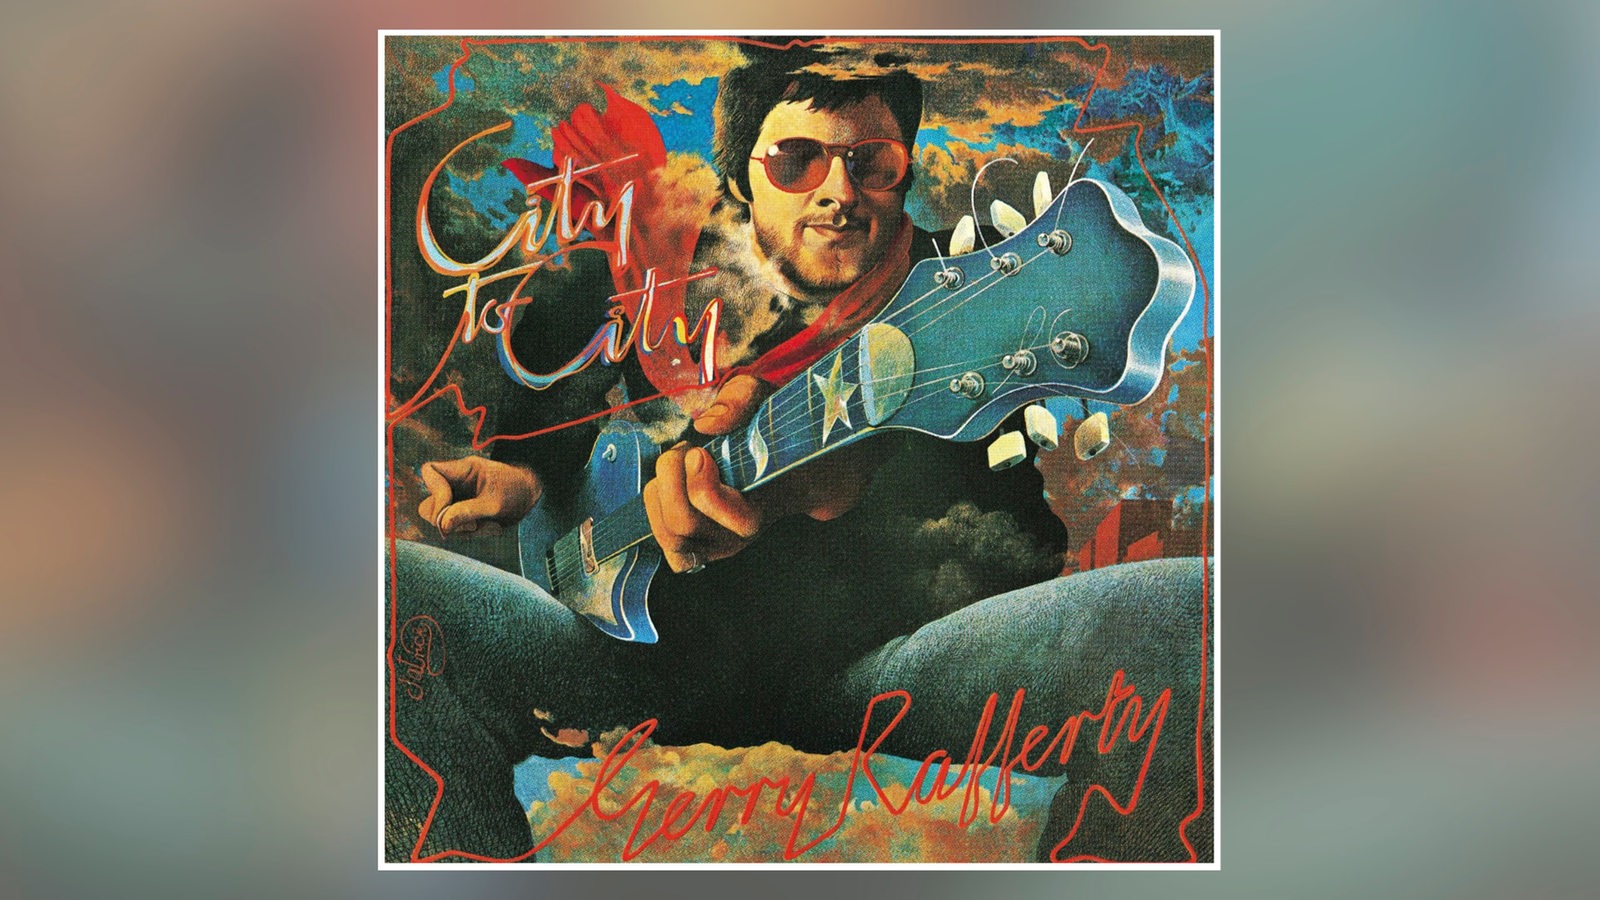 Albumcover Gerry Rafferty "City To Go"